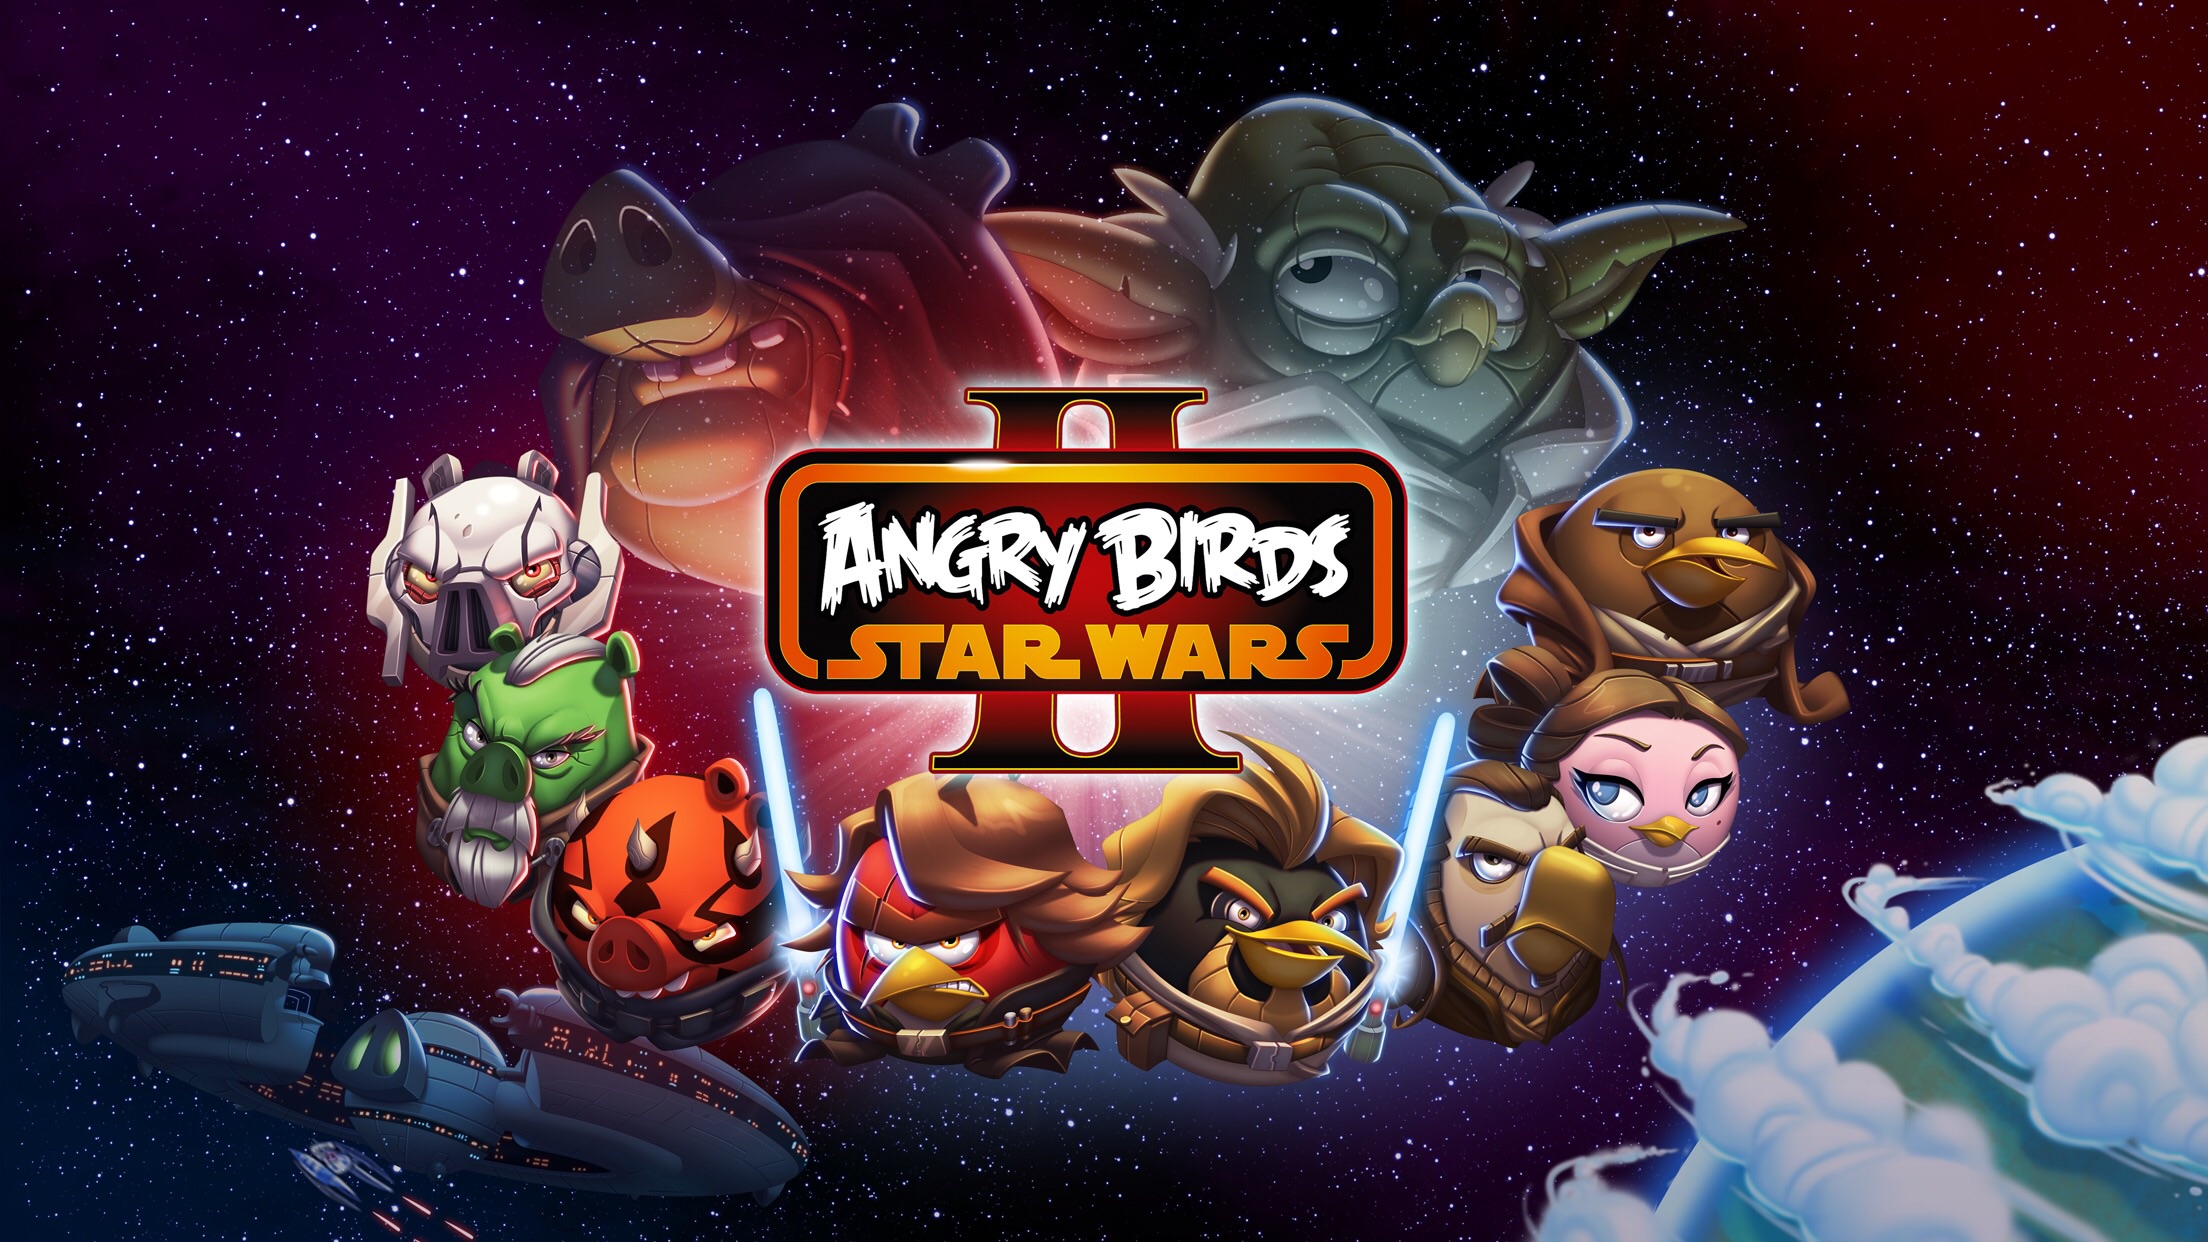 Энгри бердз star. Игра Angry Birds Star Wars 1. Энгрибёрдцзвёздные войны 2. Звездные войны Энгри Бердс Стар ВАРС 2. Игра Angry Birds Star Wars 3.